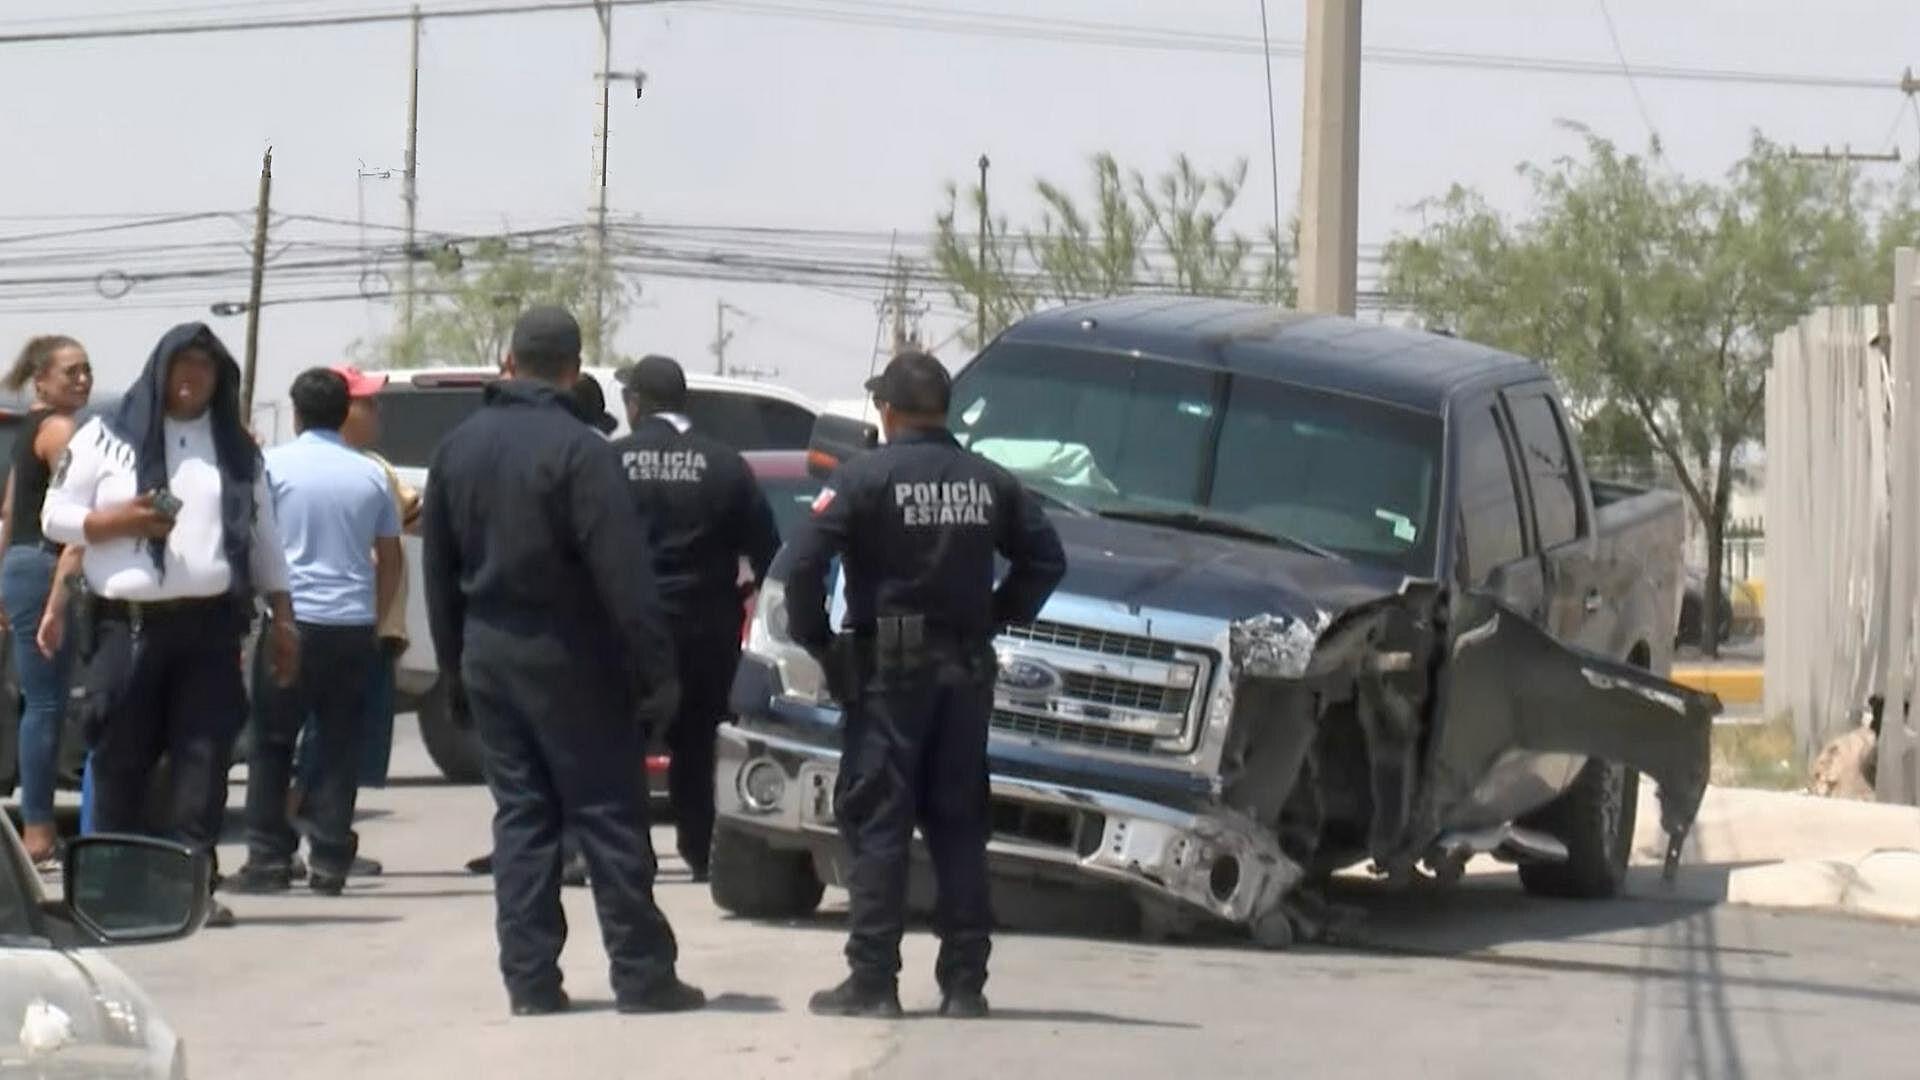 Criminales Roban Camioneta, Chocan y Huyen a Pie en Ciudad Juárez